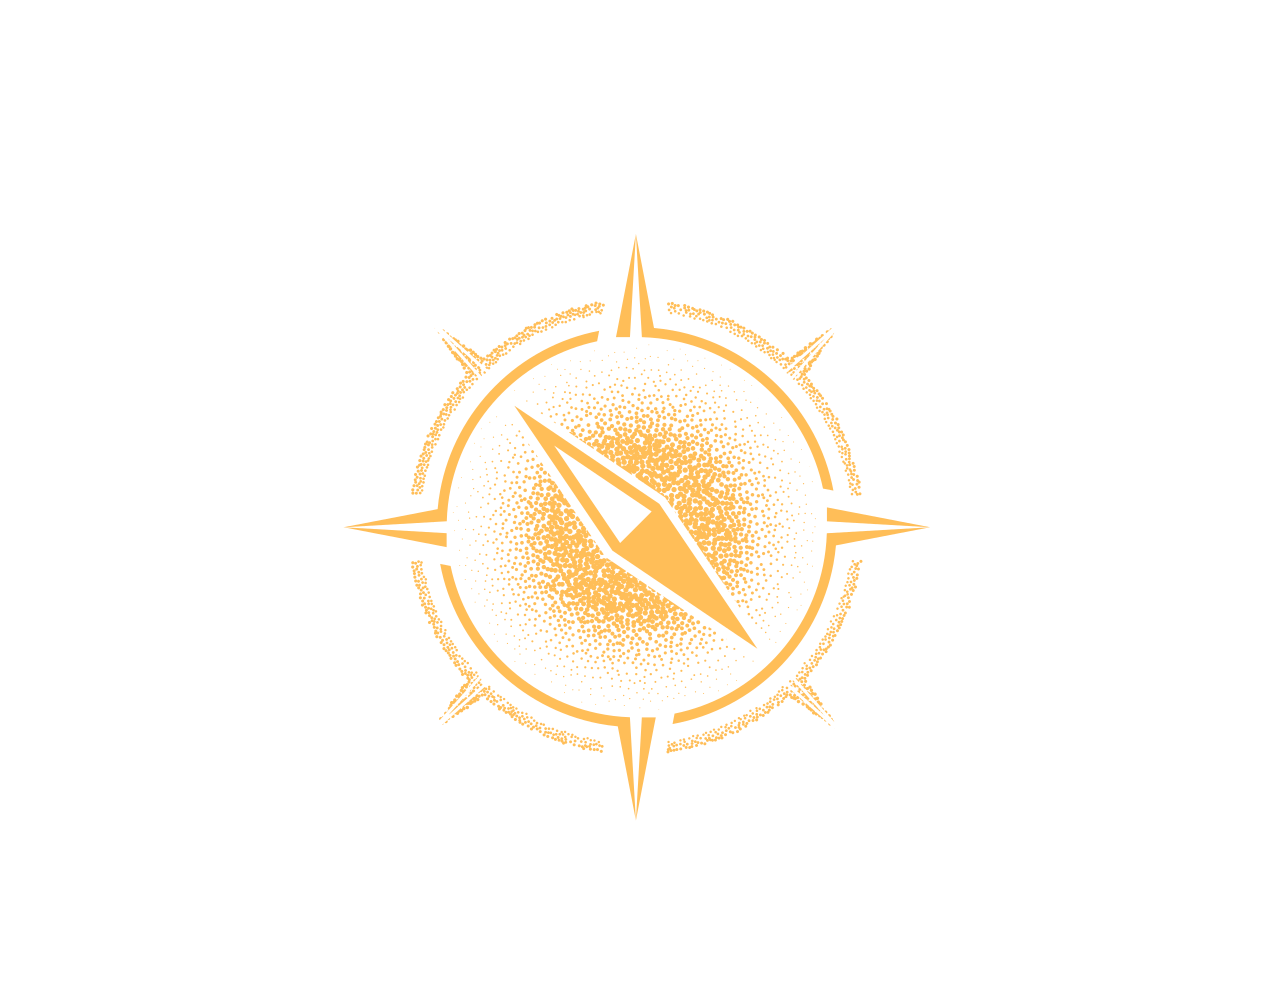 COMPASS FREIGHT 's logo